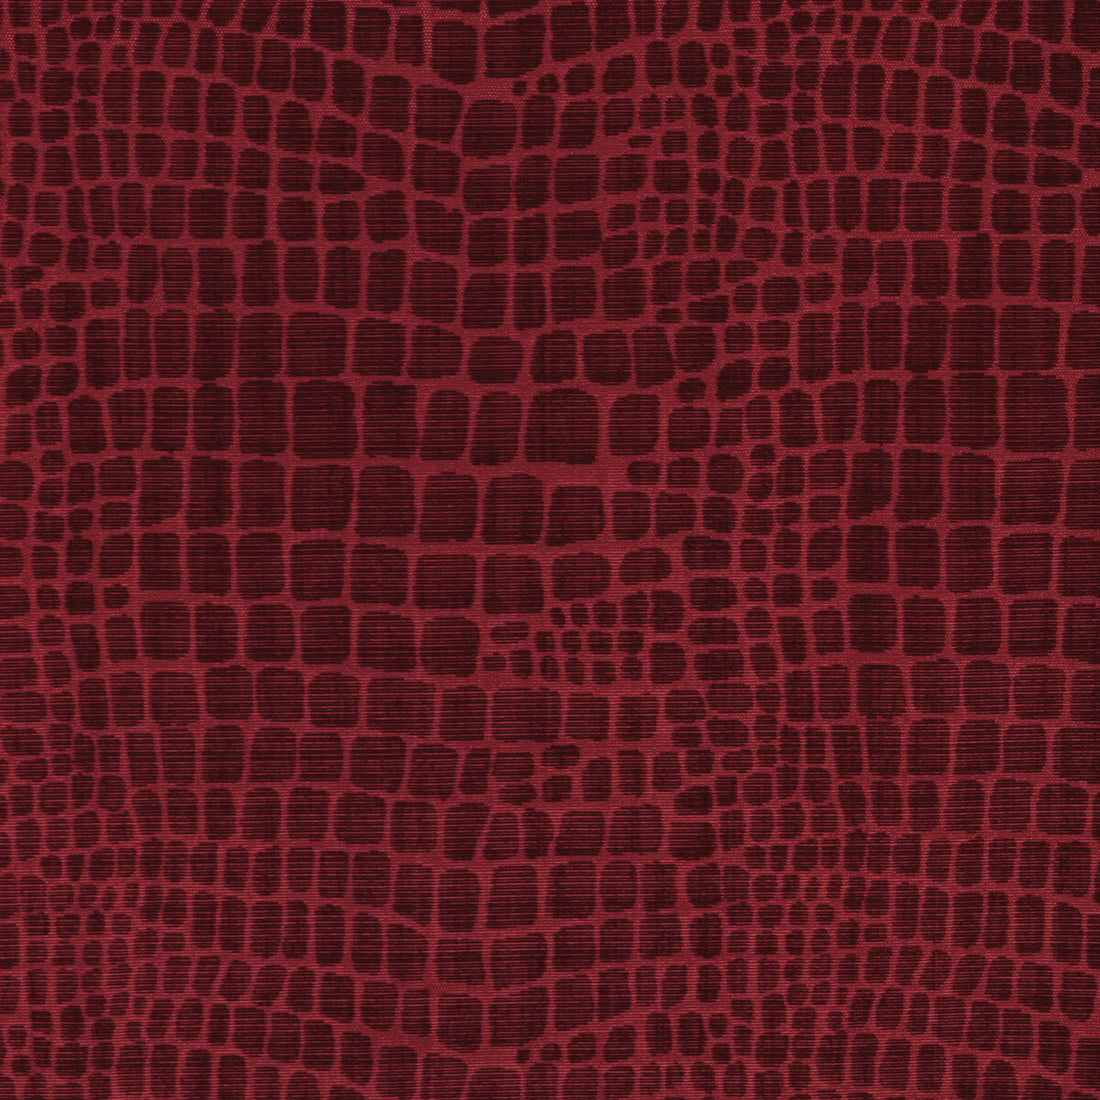 Croc Velvet fabric in garnet color - pattern 8023140.19.0 - by Brunschwig &amp; Fils in the Celeste collection